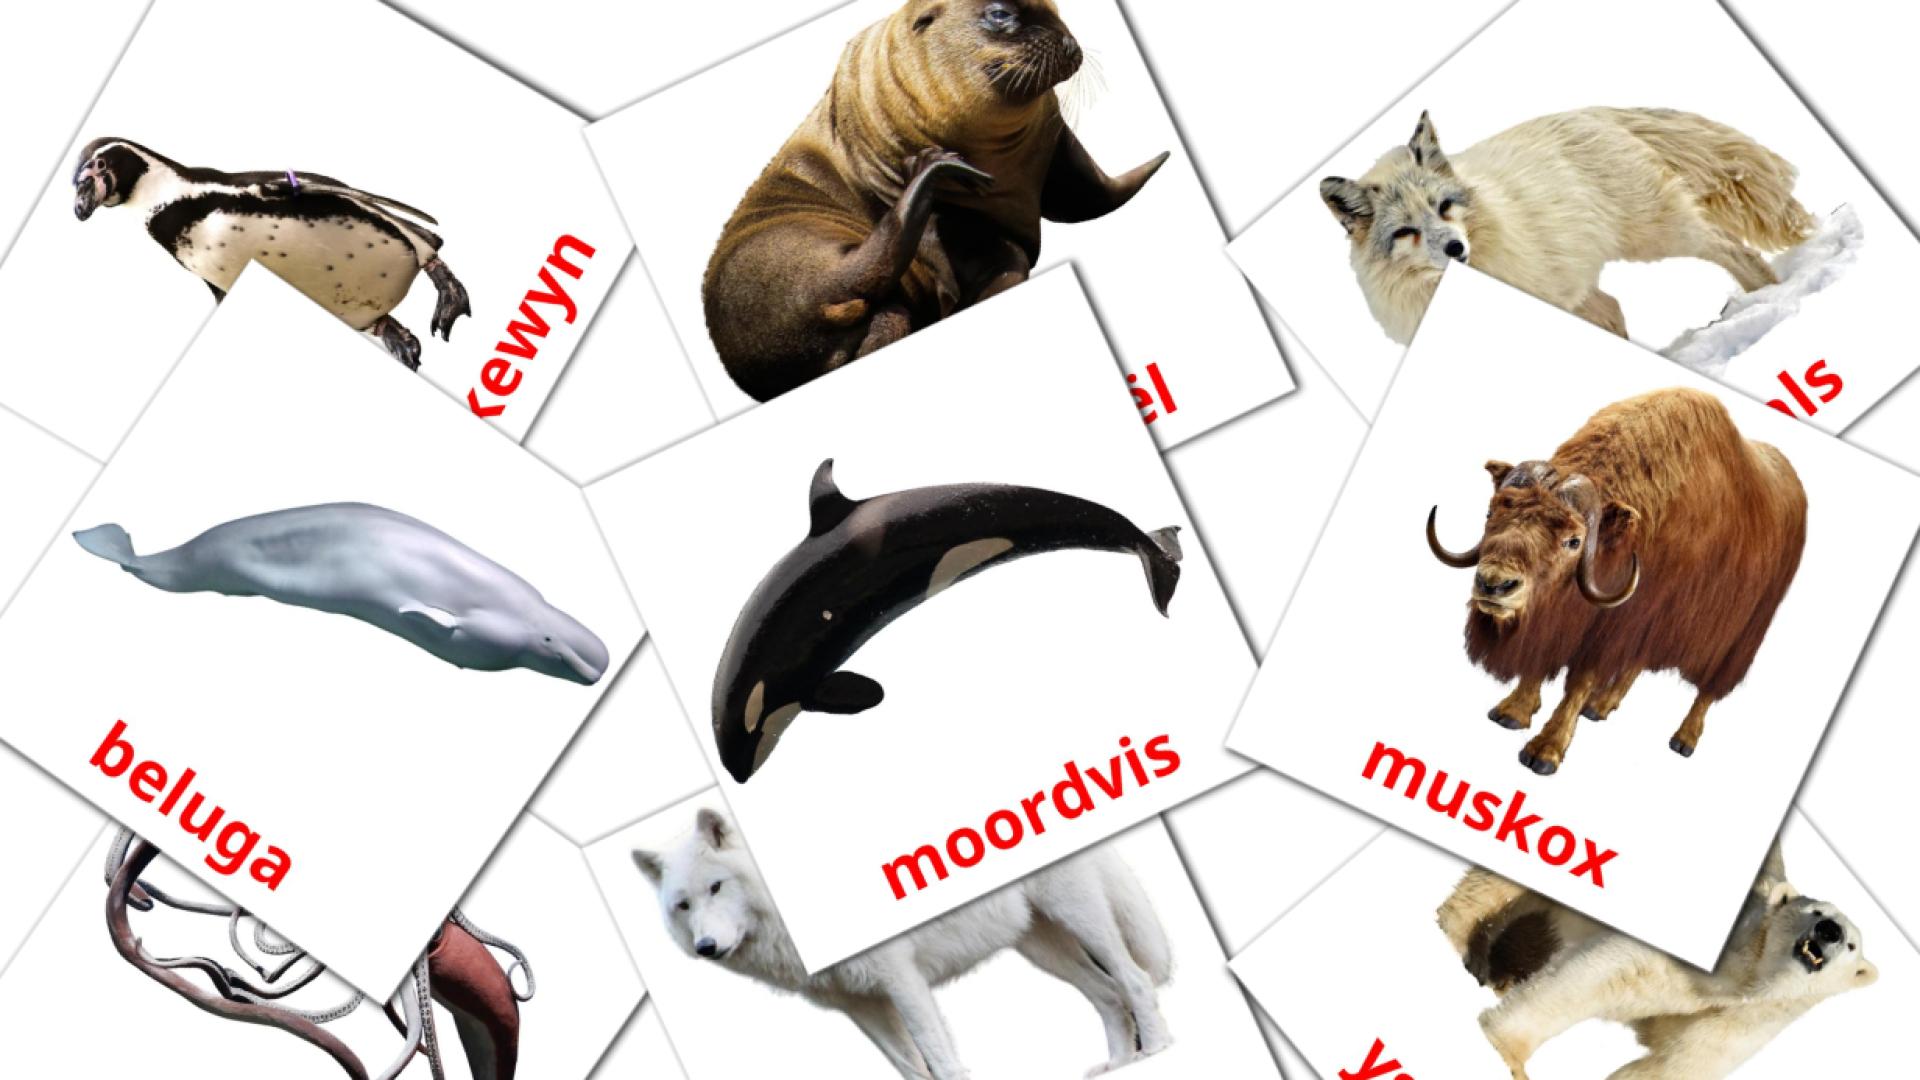 Tiere in der arktis - Afrikaans Vokabelkarten